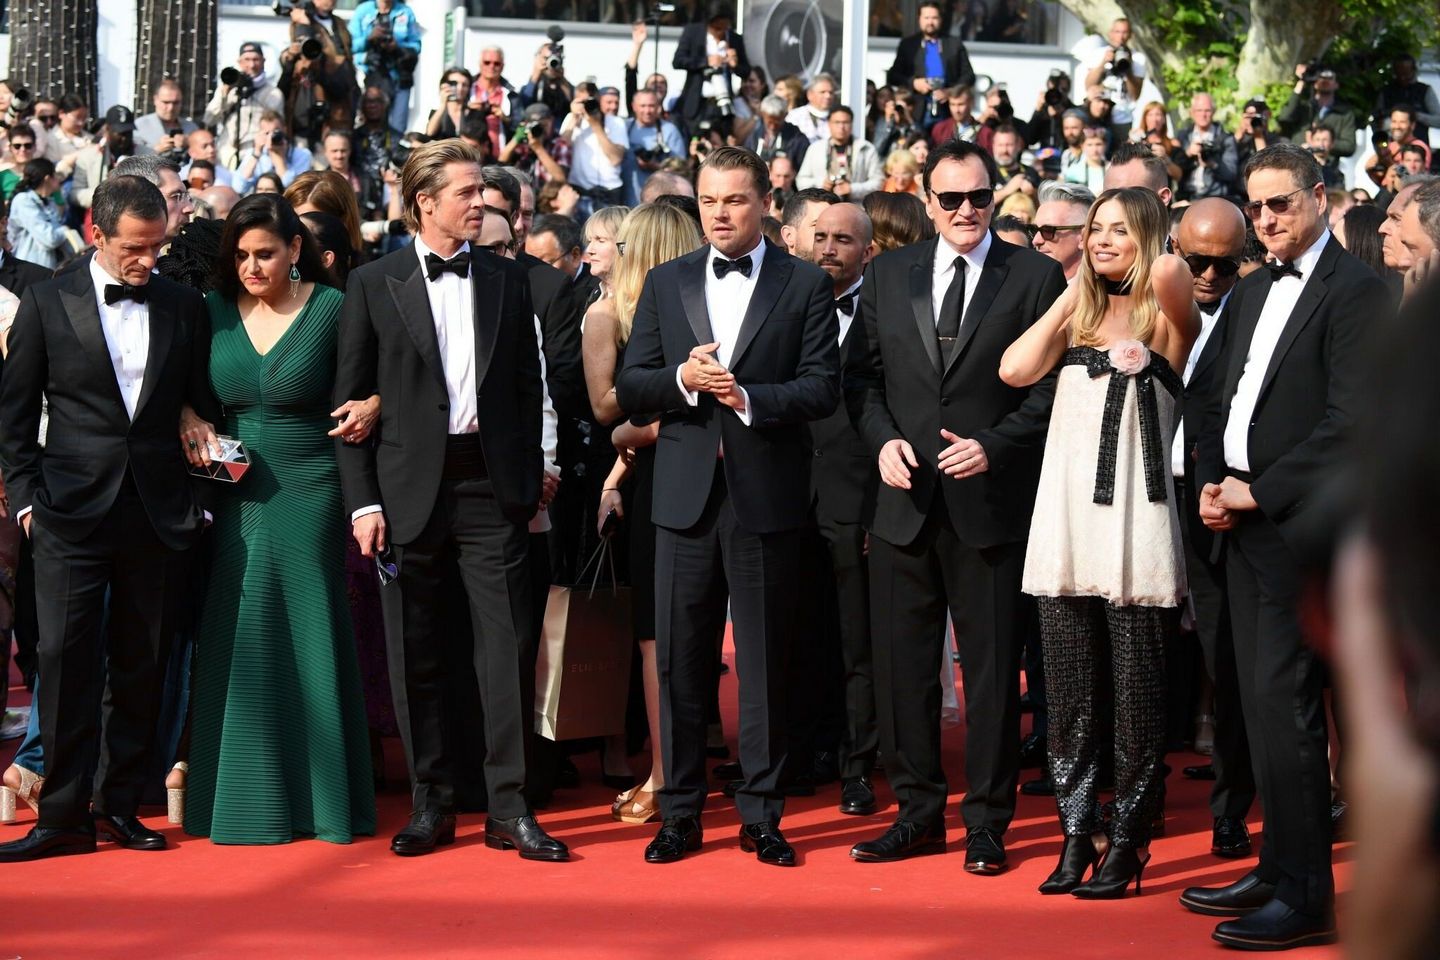 Bradd Pitt and Leonardo DiCaprio and Quentin Tarantino and Margot Robbie Photos